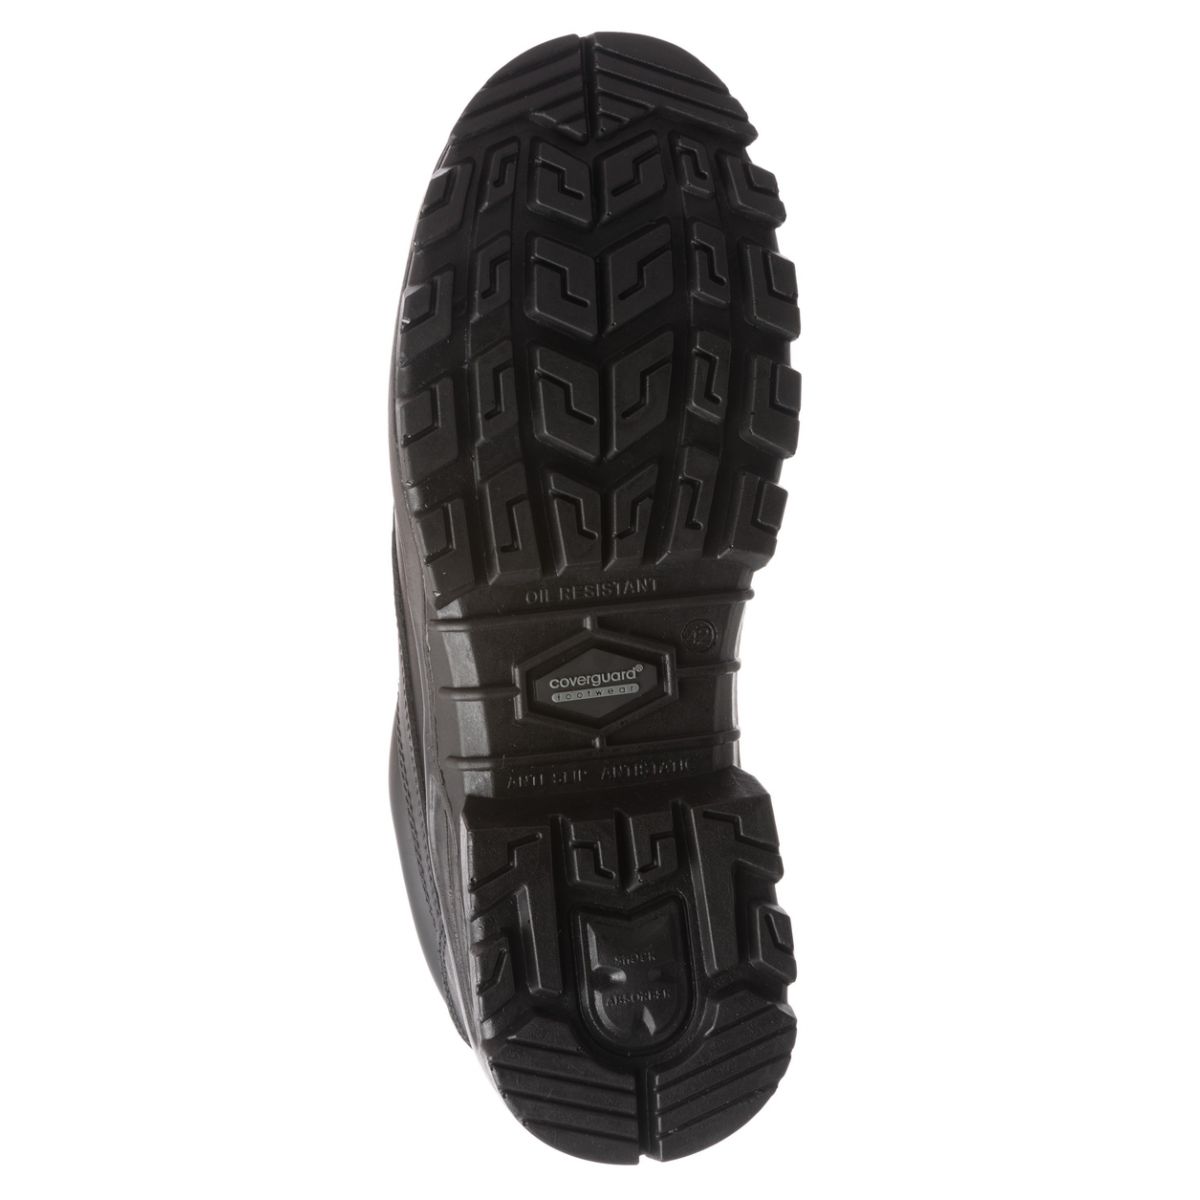 Chaussure de sécurité AVENTURINE S3 basse noir composite - COVERGUARD - Taille 44 1